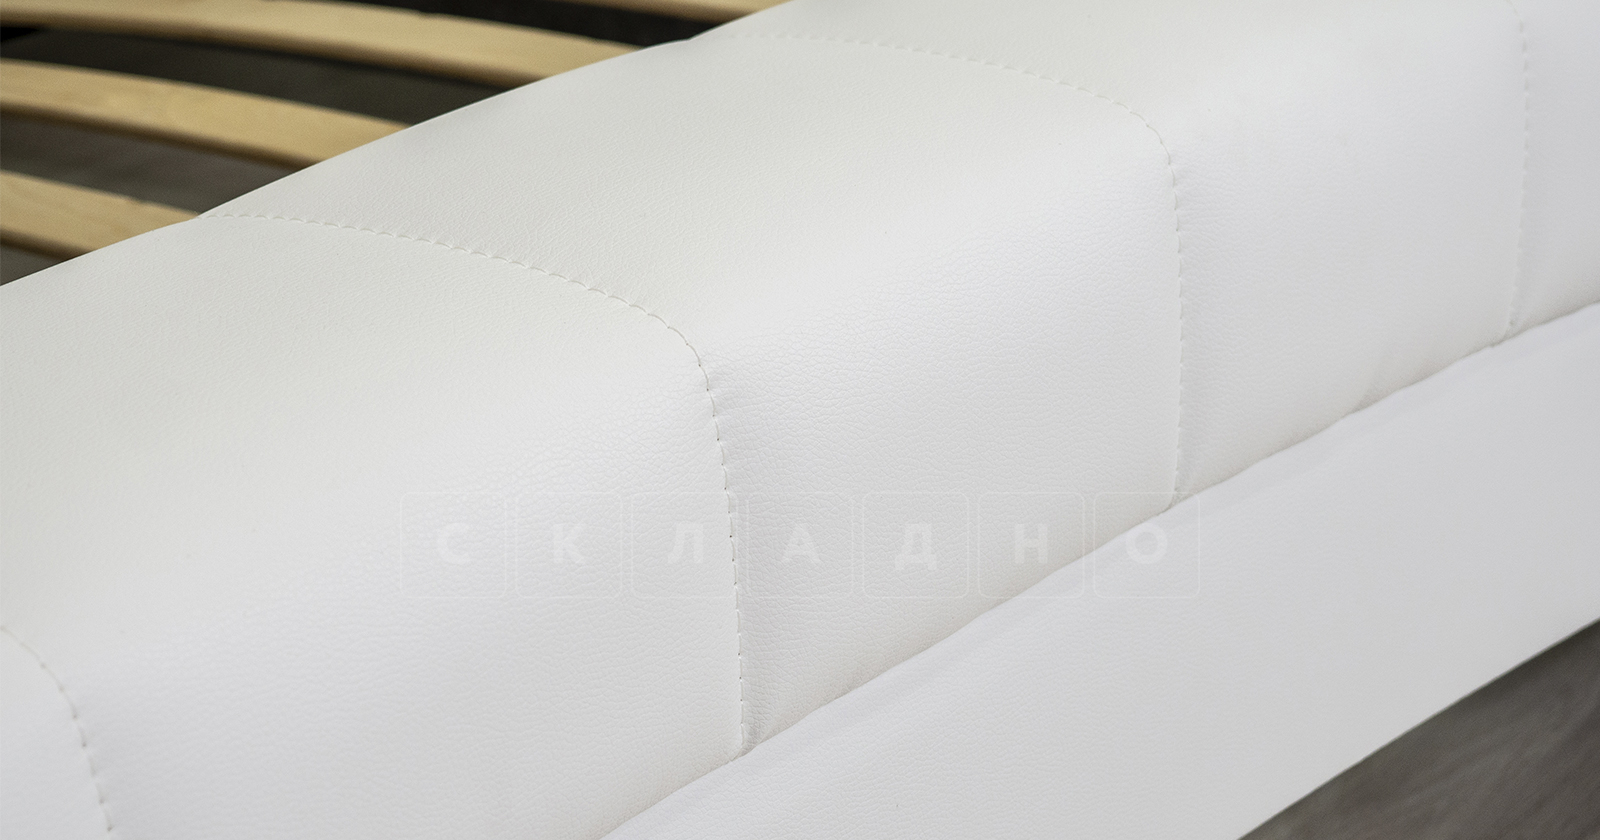 Мягкая кровать Оливия 160 см экокожа белый фото 13 | интернет-магазин Складно